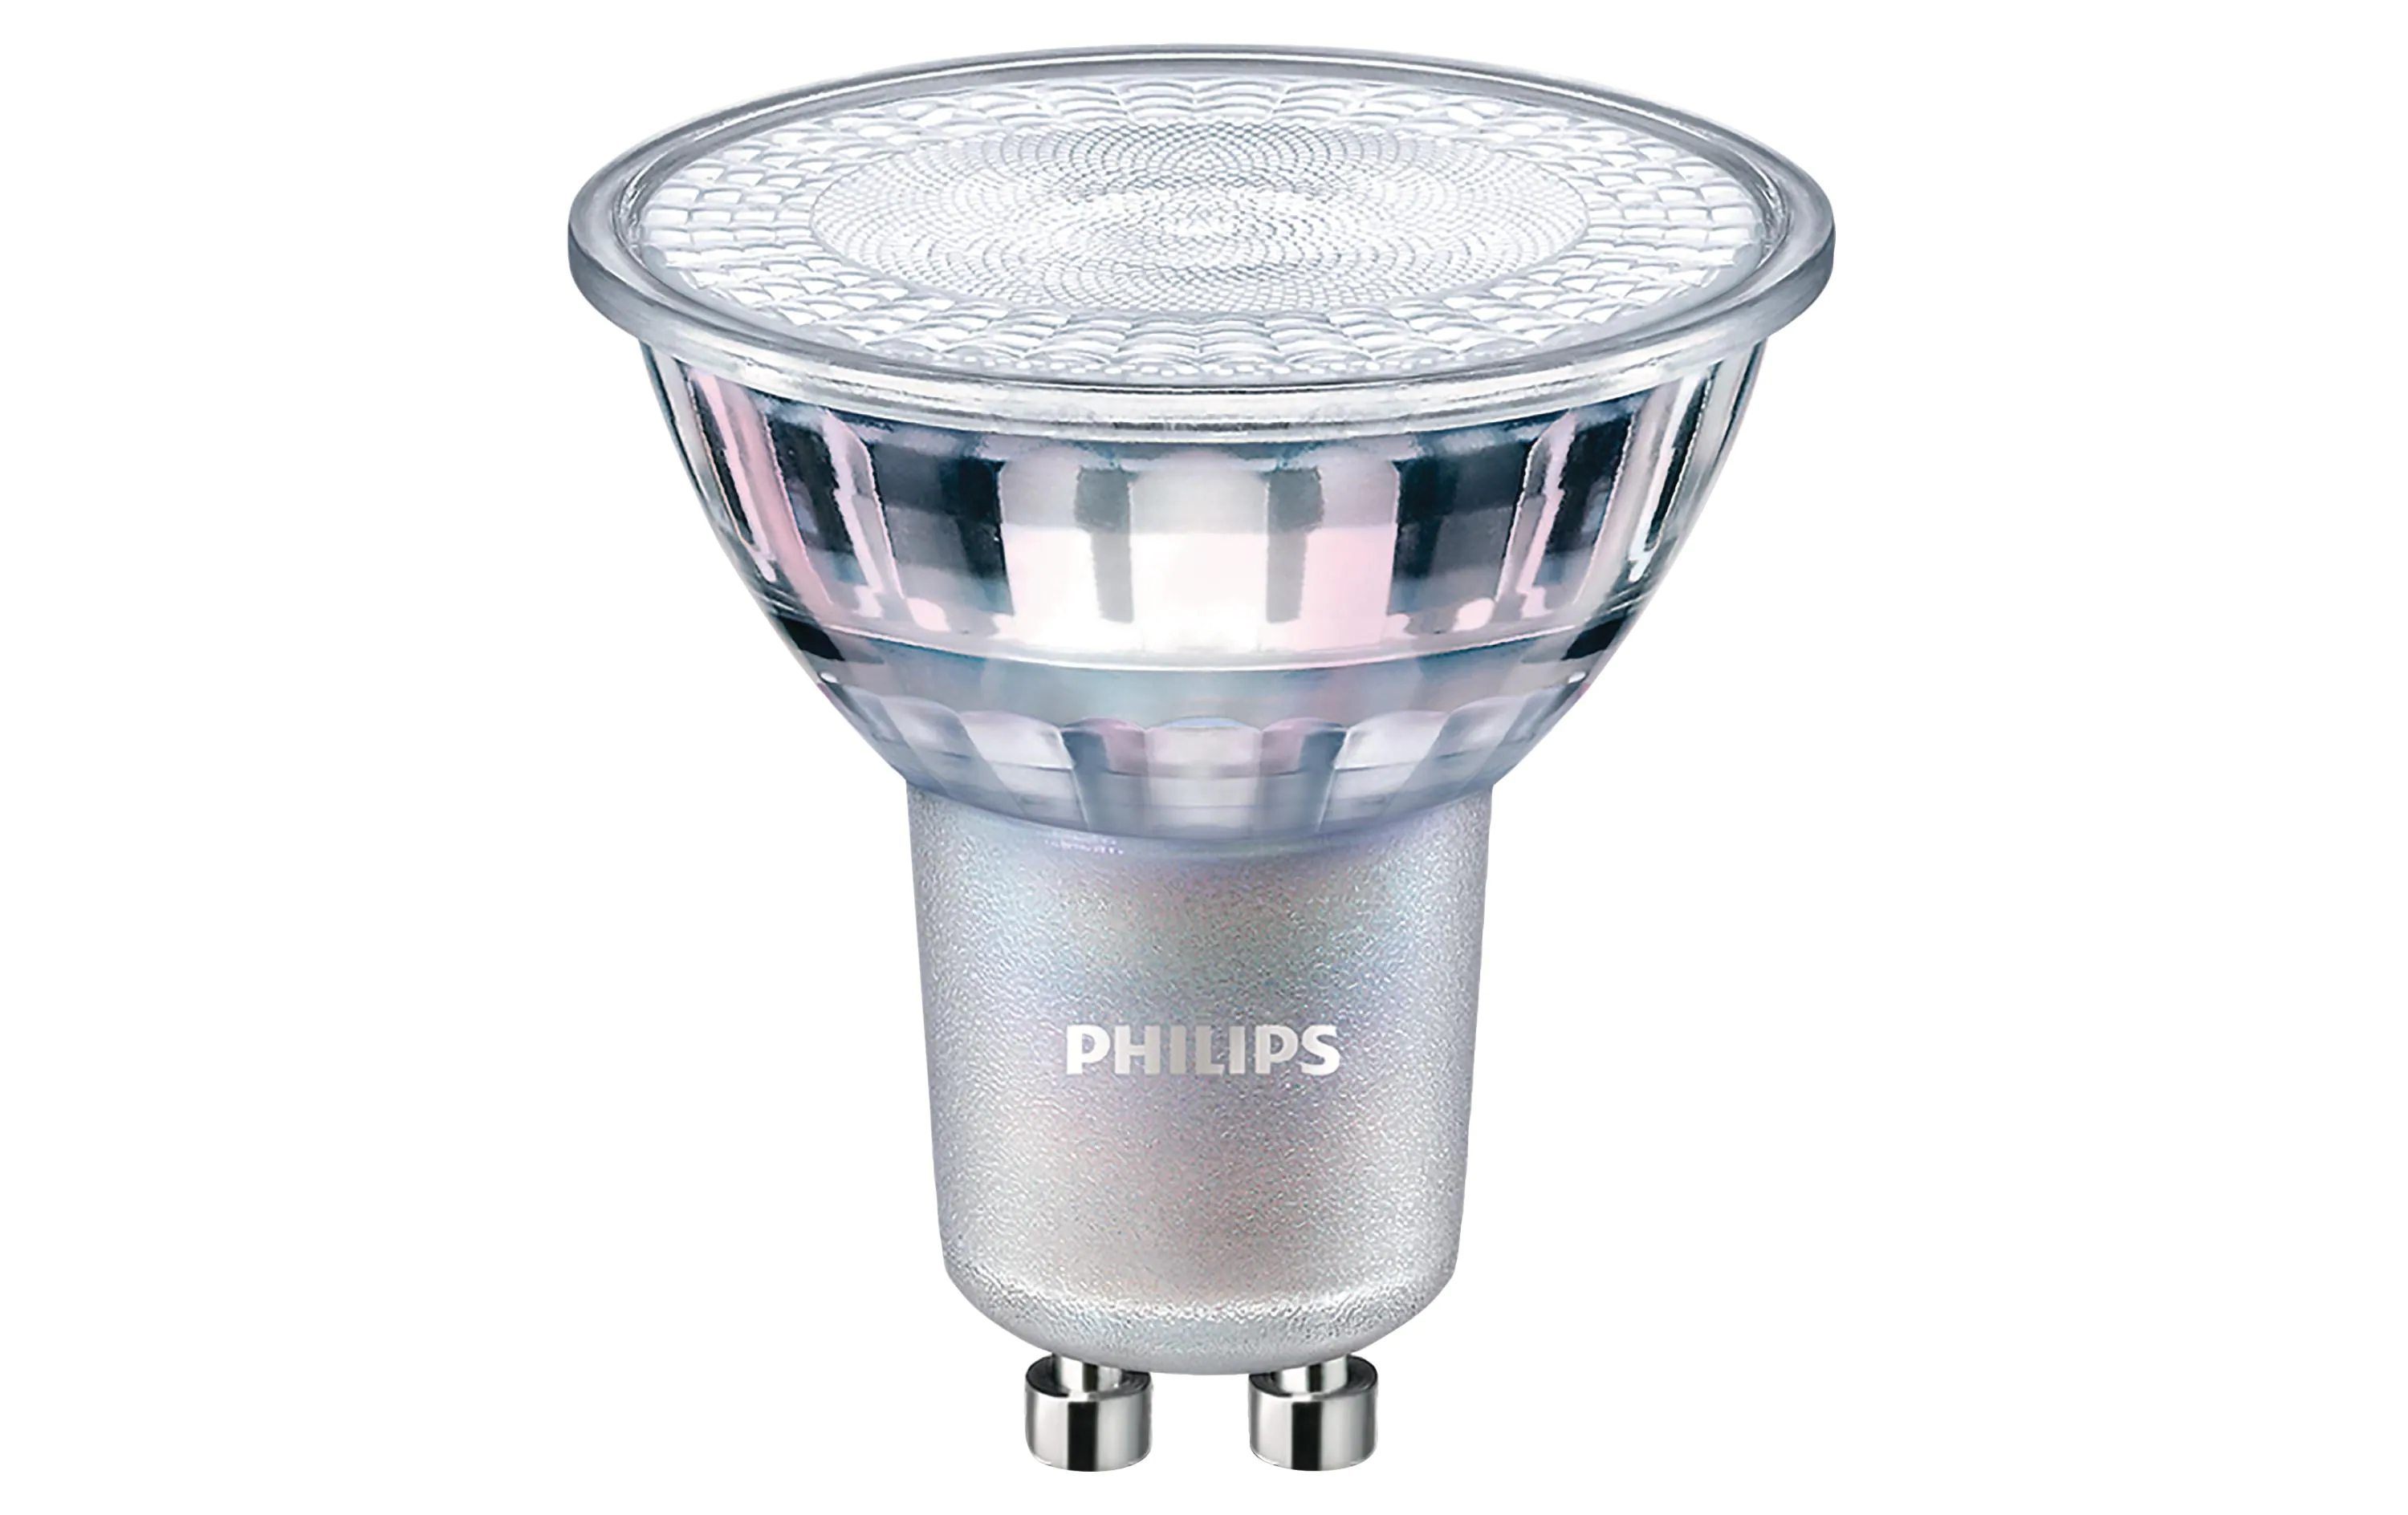 Philips Professional Lampe MAS LED spot VLE DT 4.9-50W GU10 927 36D, Gesamtleistung: 4.9 W, Lichtstrom: 355 lm, Lampensockel: GU10, Farbtemperatur Kelvin: 2200 bis 2700 K, Dimmbar, Leuchtmittel Technologie: LED, Geeignet für: Hochvolt, Lichtausbeute: 72